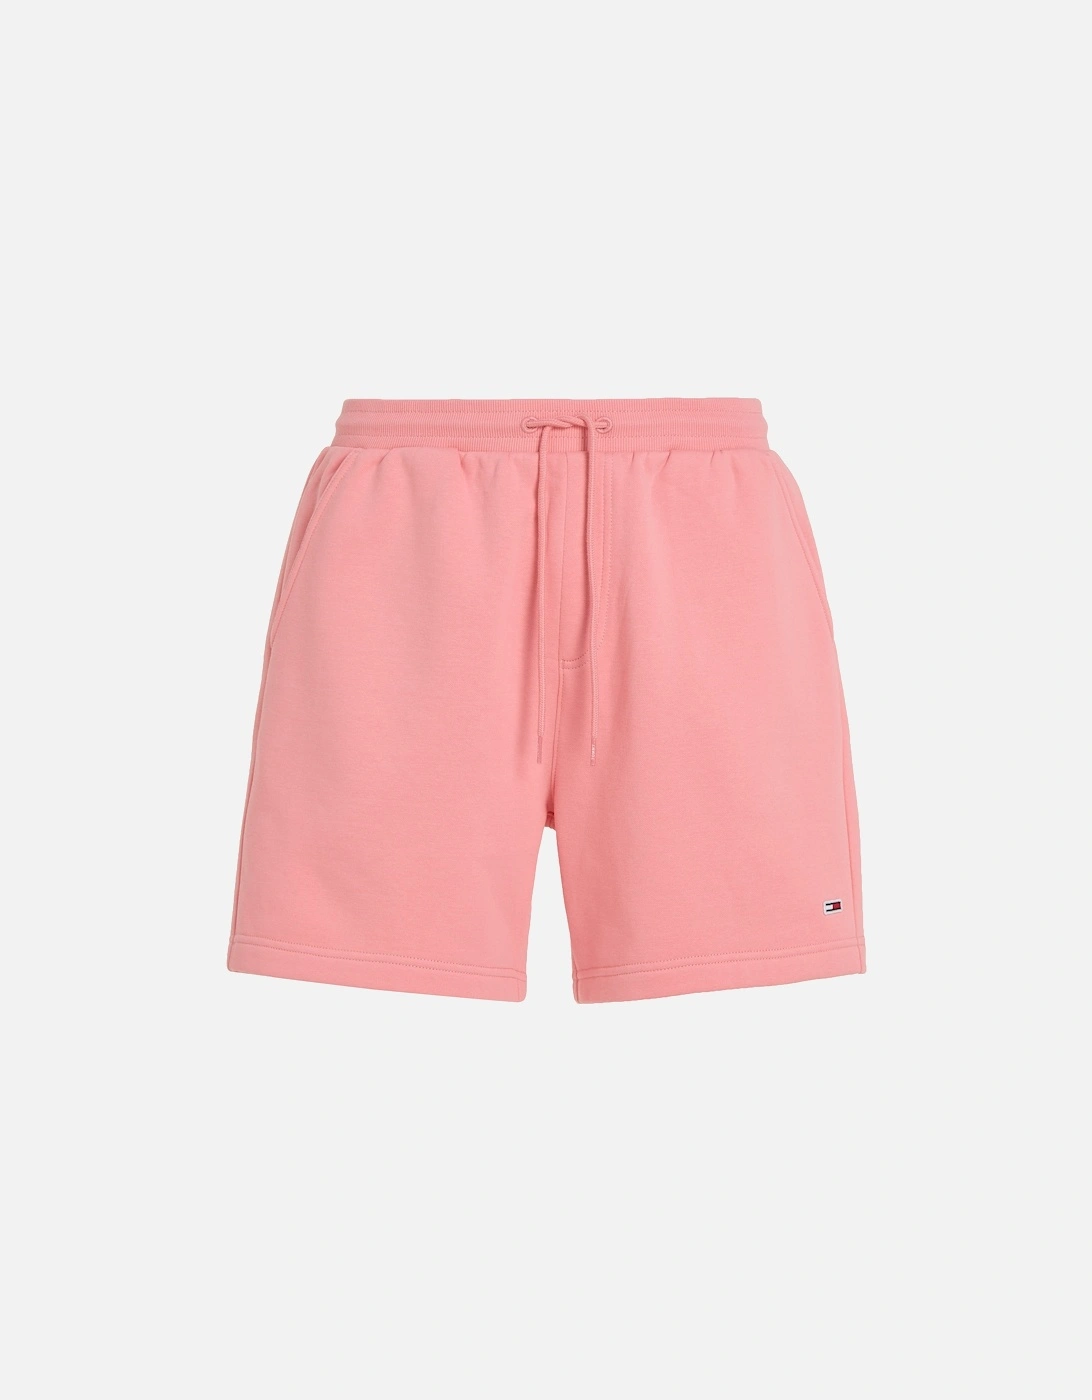 Mens Beach Fleece Shorts (Pink), 7 of 6